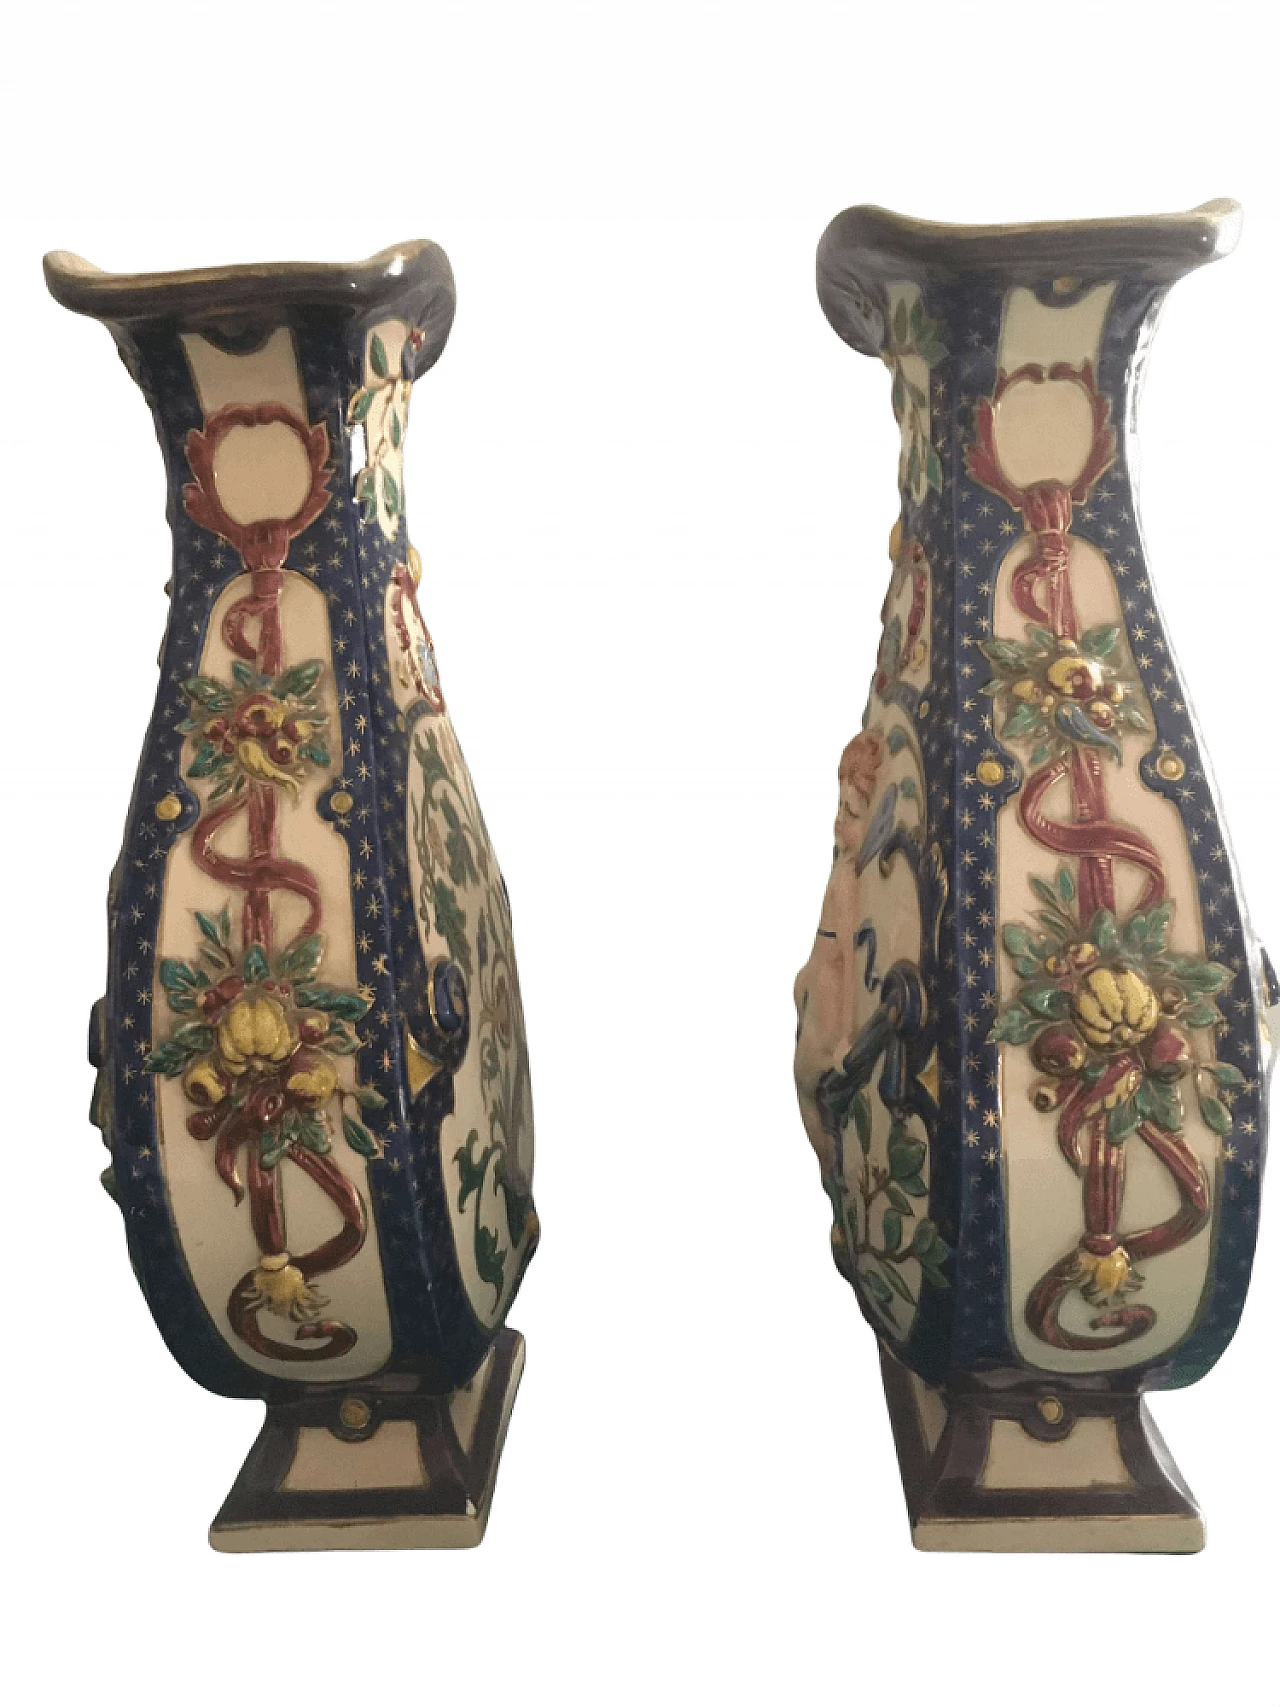 Pair of Schütz Brothers ceramic vases, 19th century 1362406